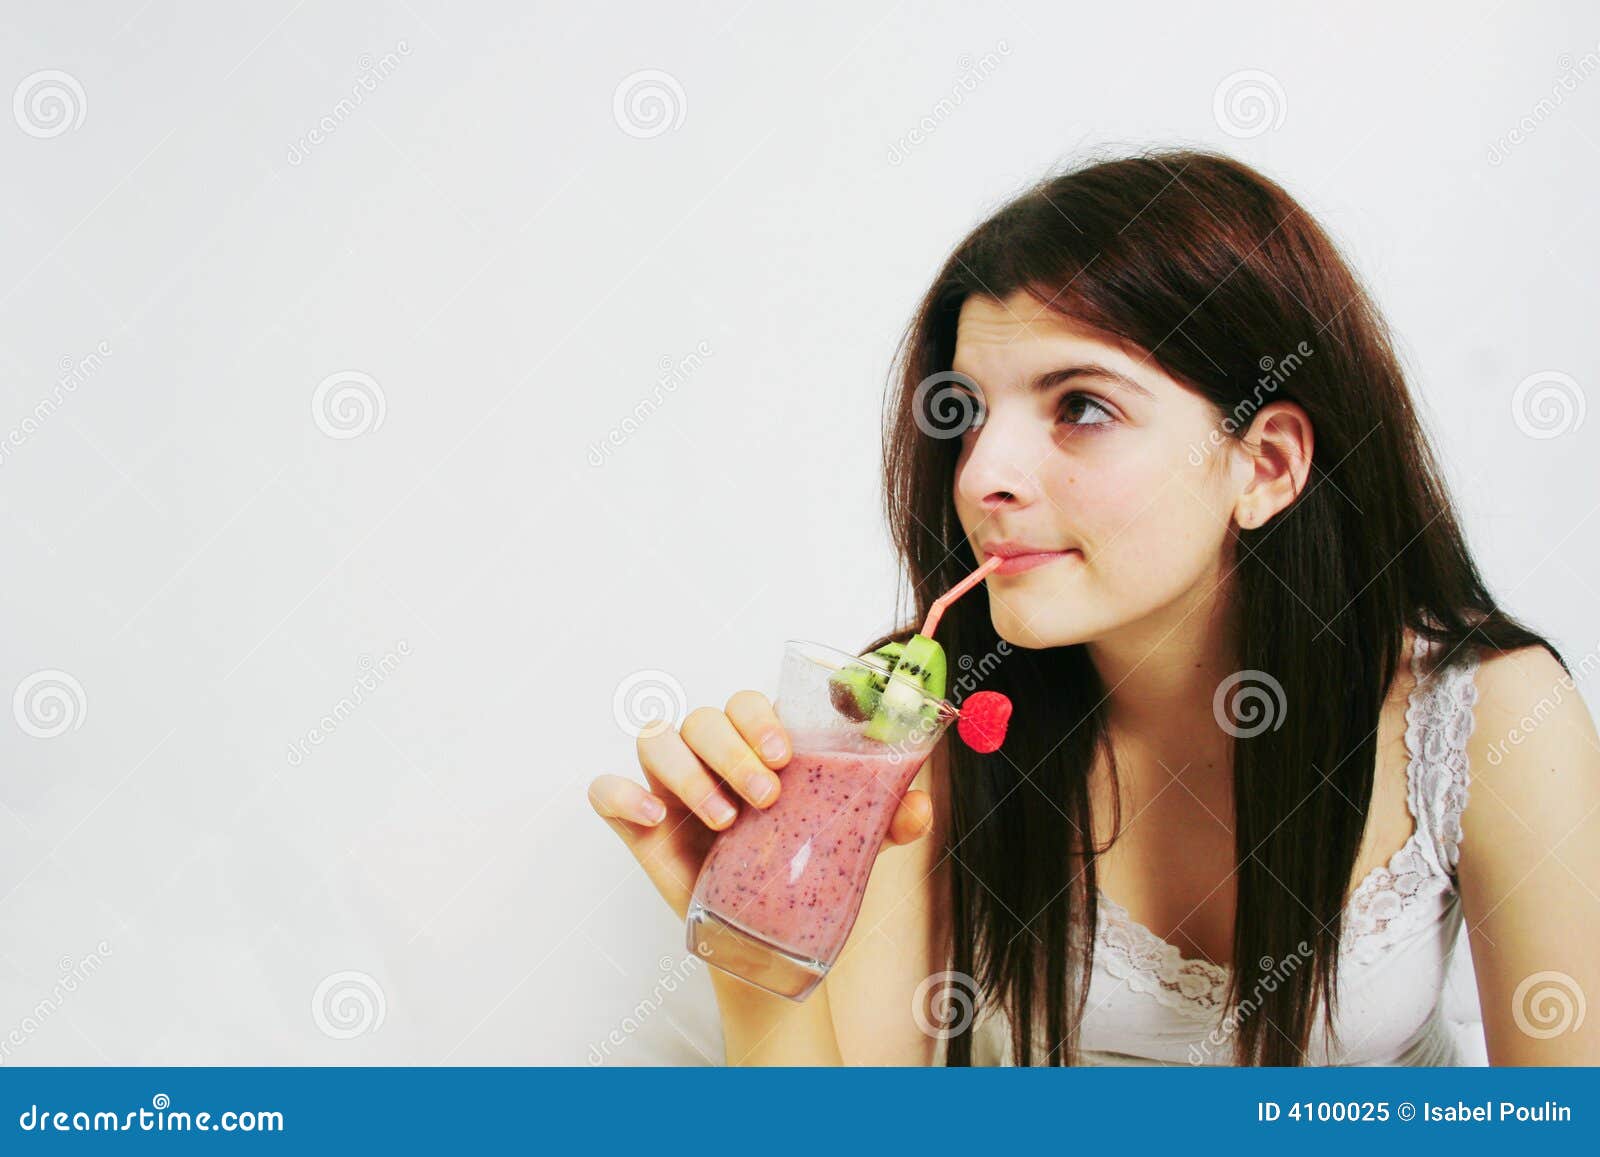 Girl Drinking Smoothie Stock Image Image Of Horizontal 4100025 